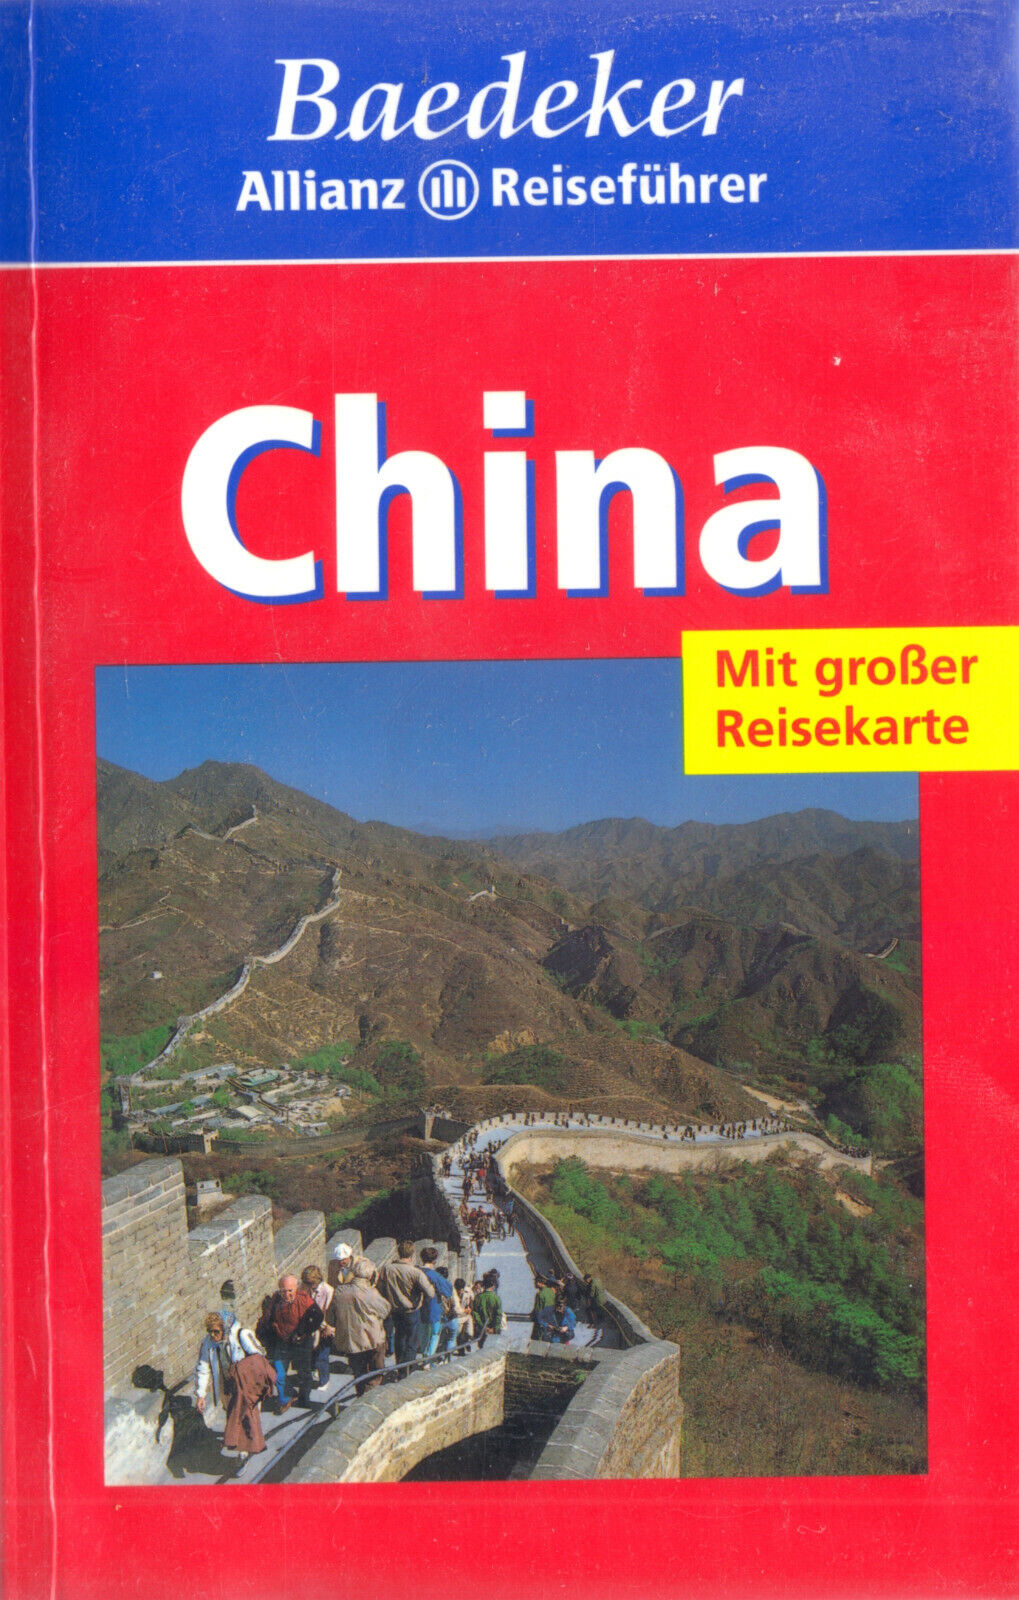 Baedeker Allianz Reiseführer, China - mit großer Reisekarte, 2000